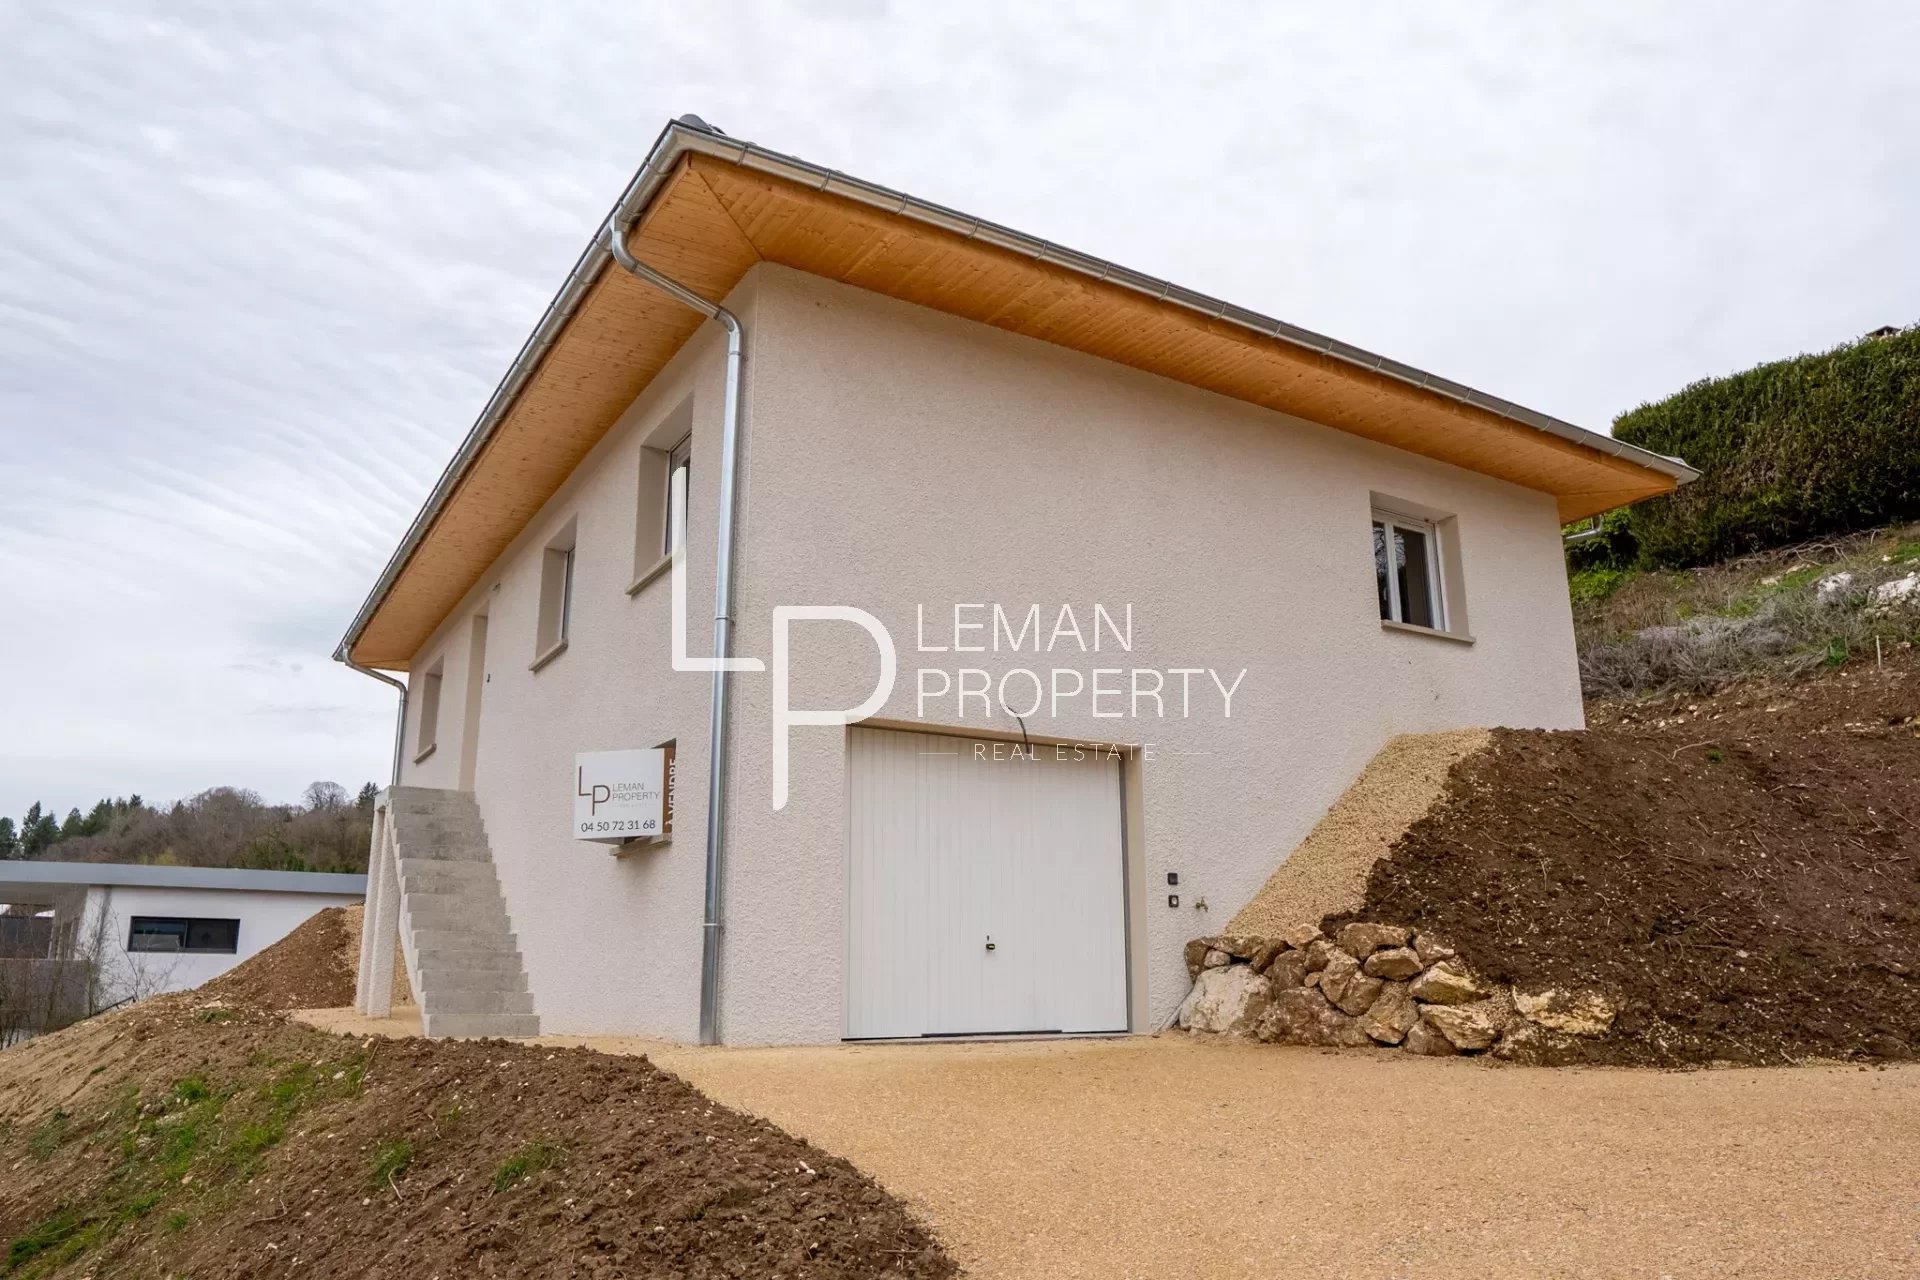 L'agence Leman property vous propose un maison à la vente